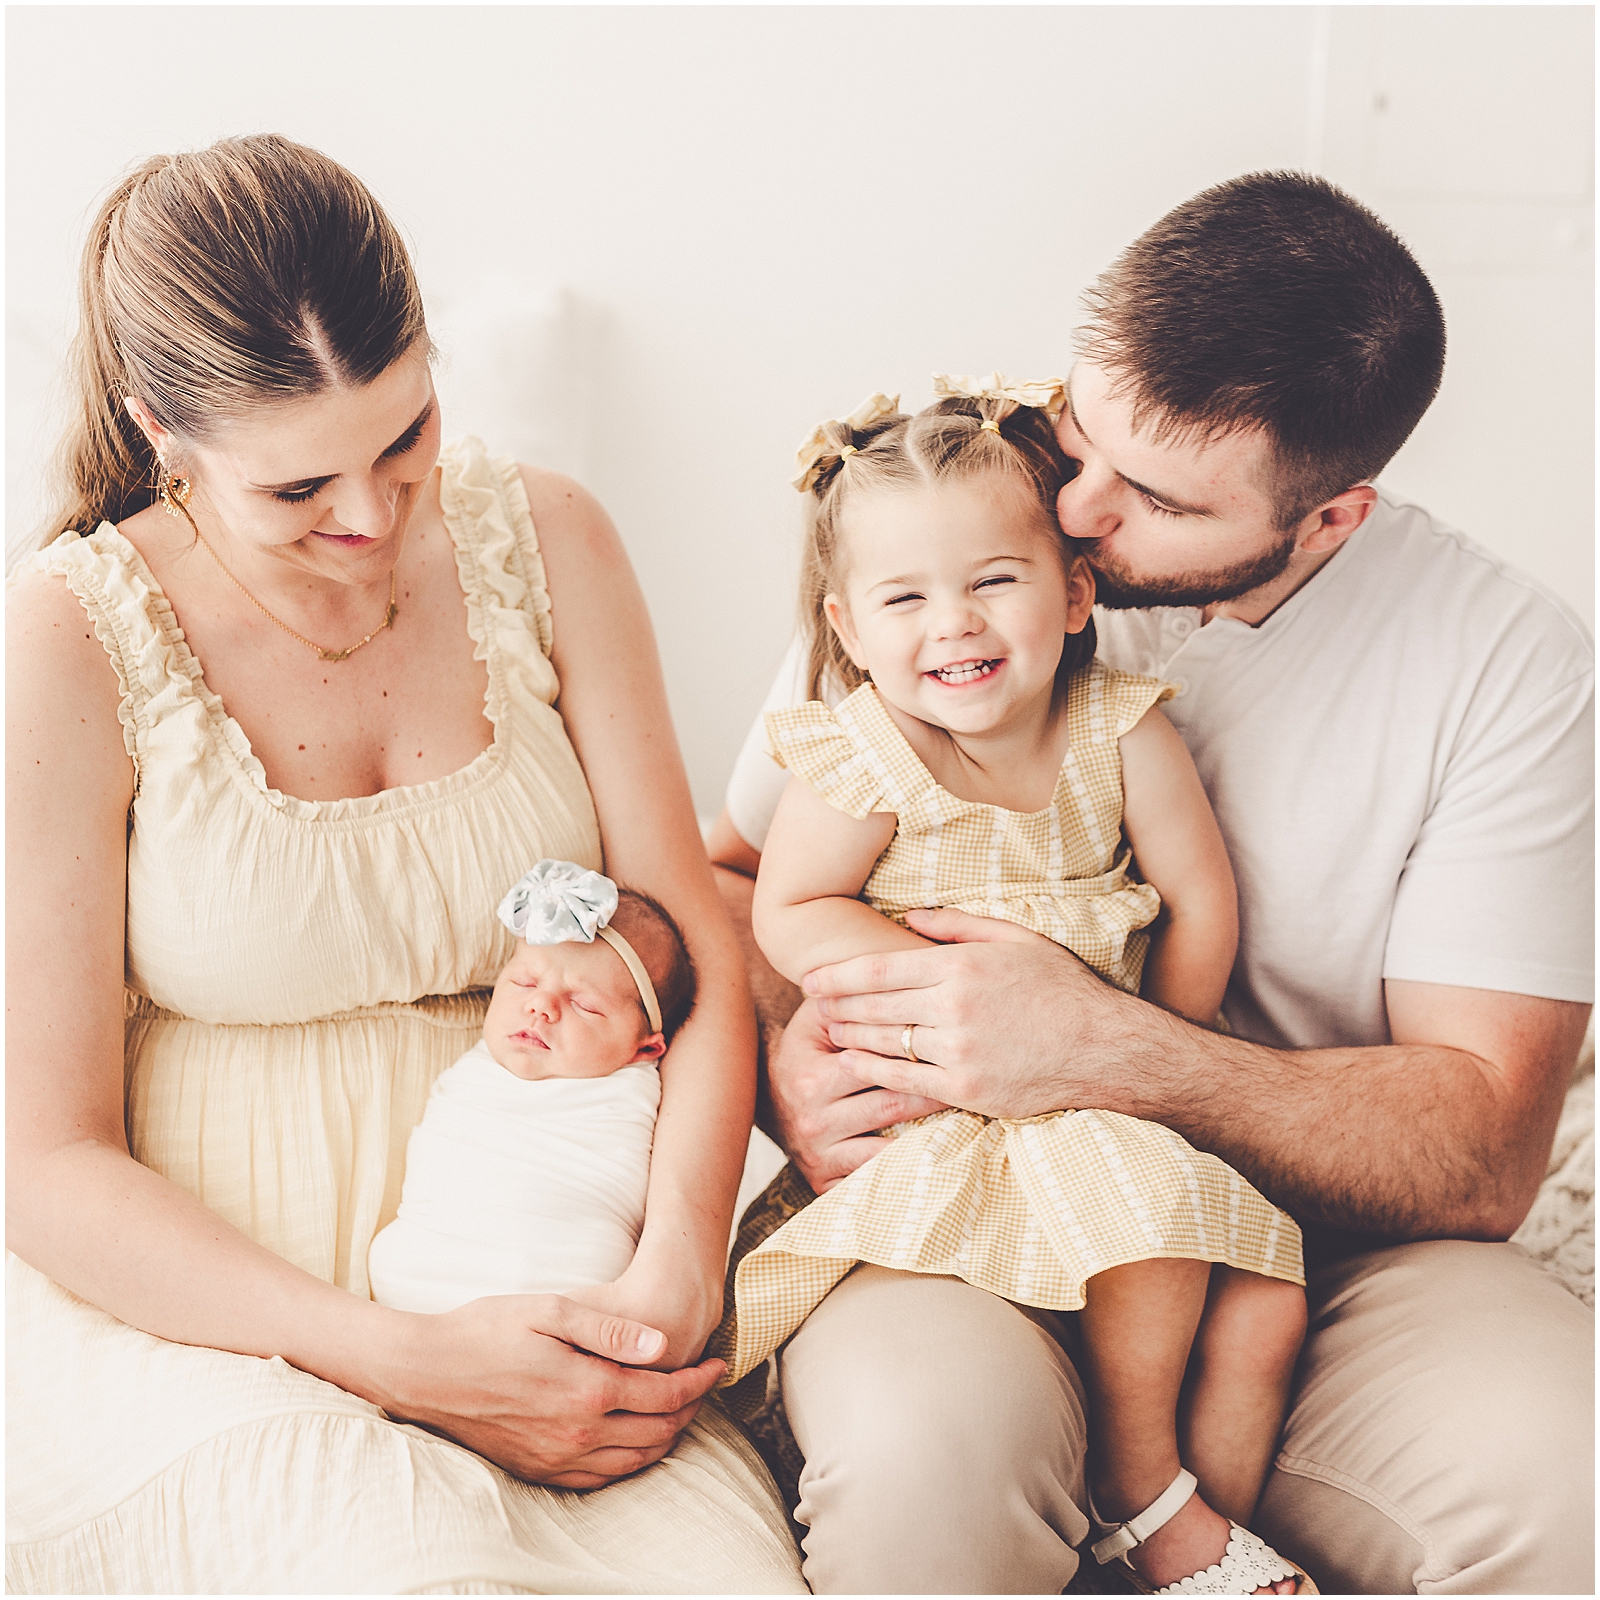 Studio newborn & family photographer in Kankakee with the Gigl family – Kankakee family photographer Kara Evans Photographer.